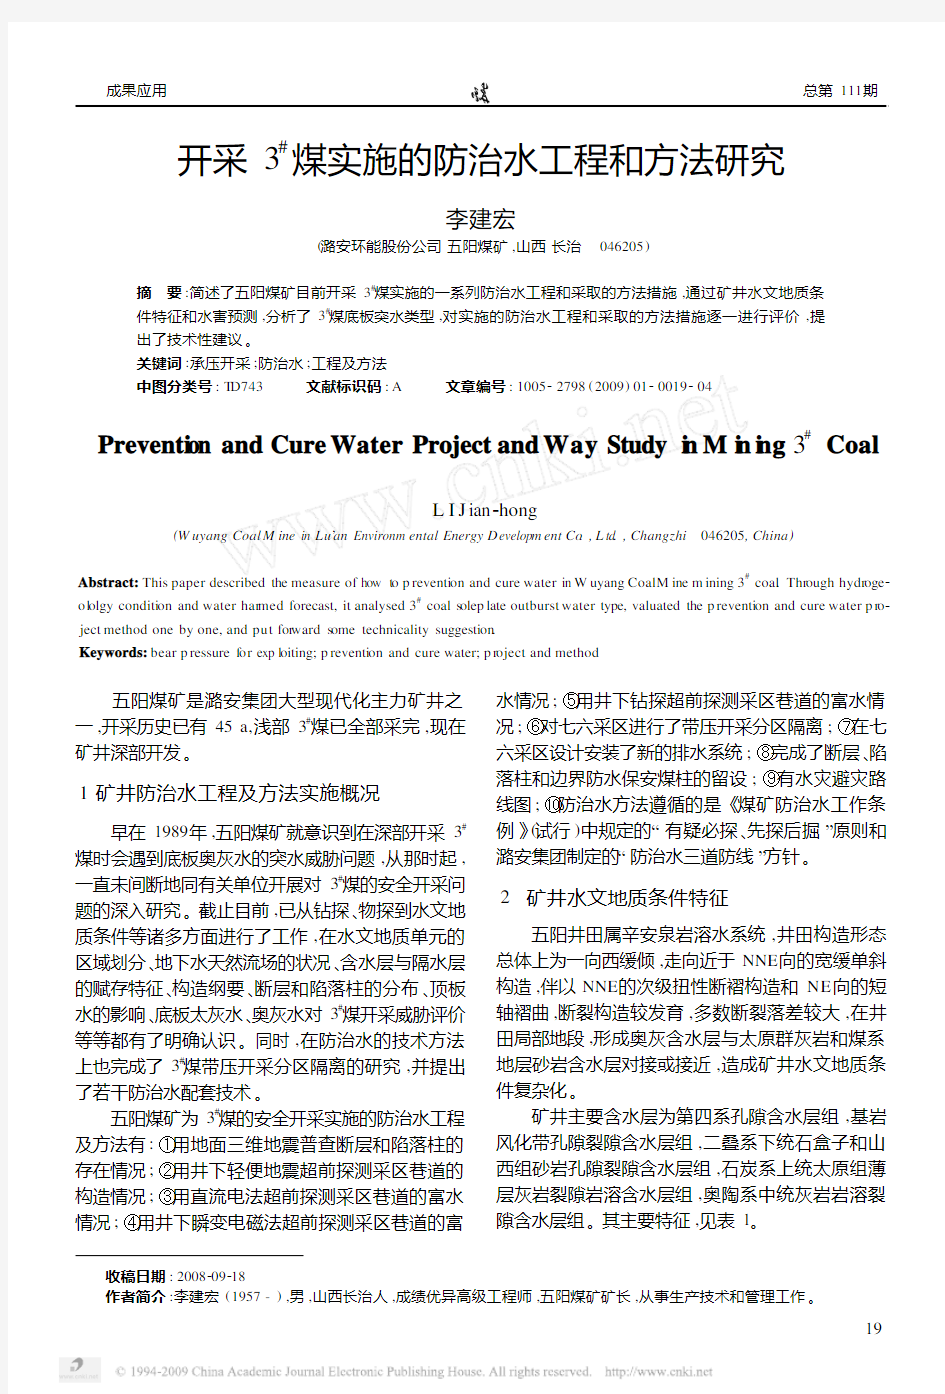 开采3_煤实施的防治水工程和方法研究